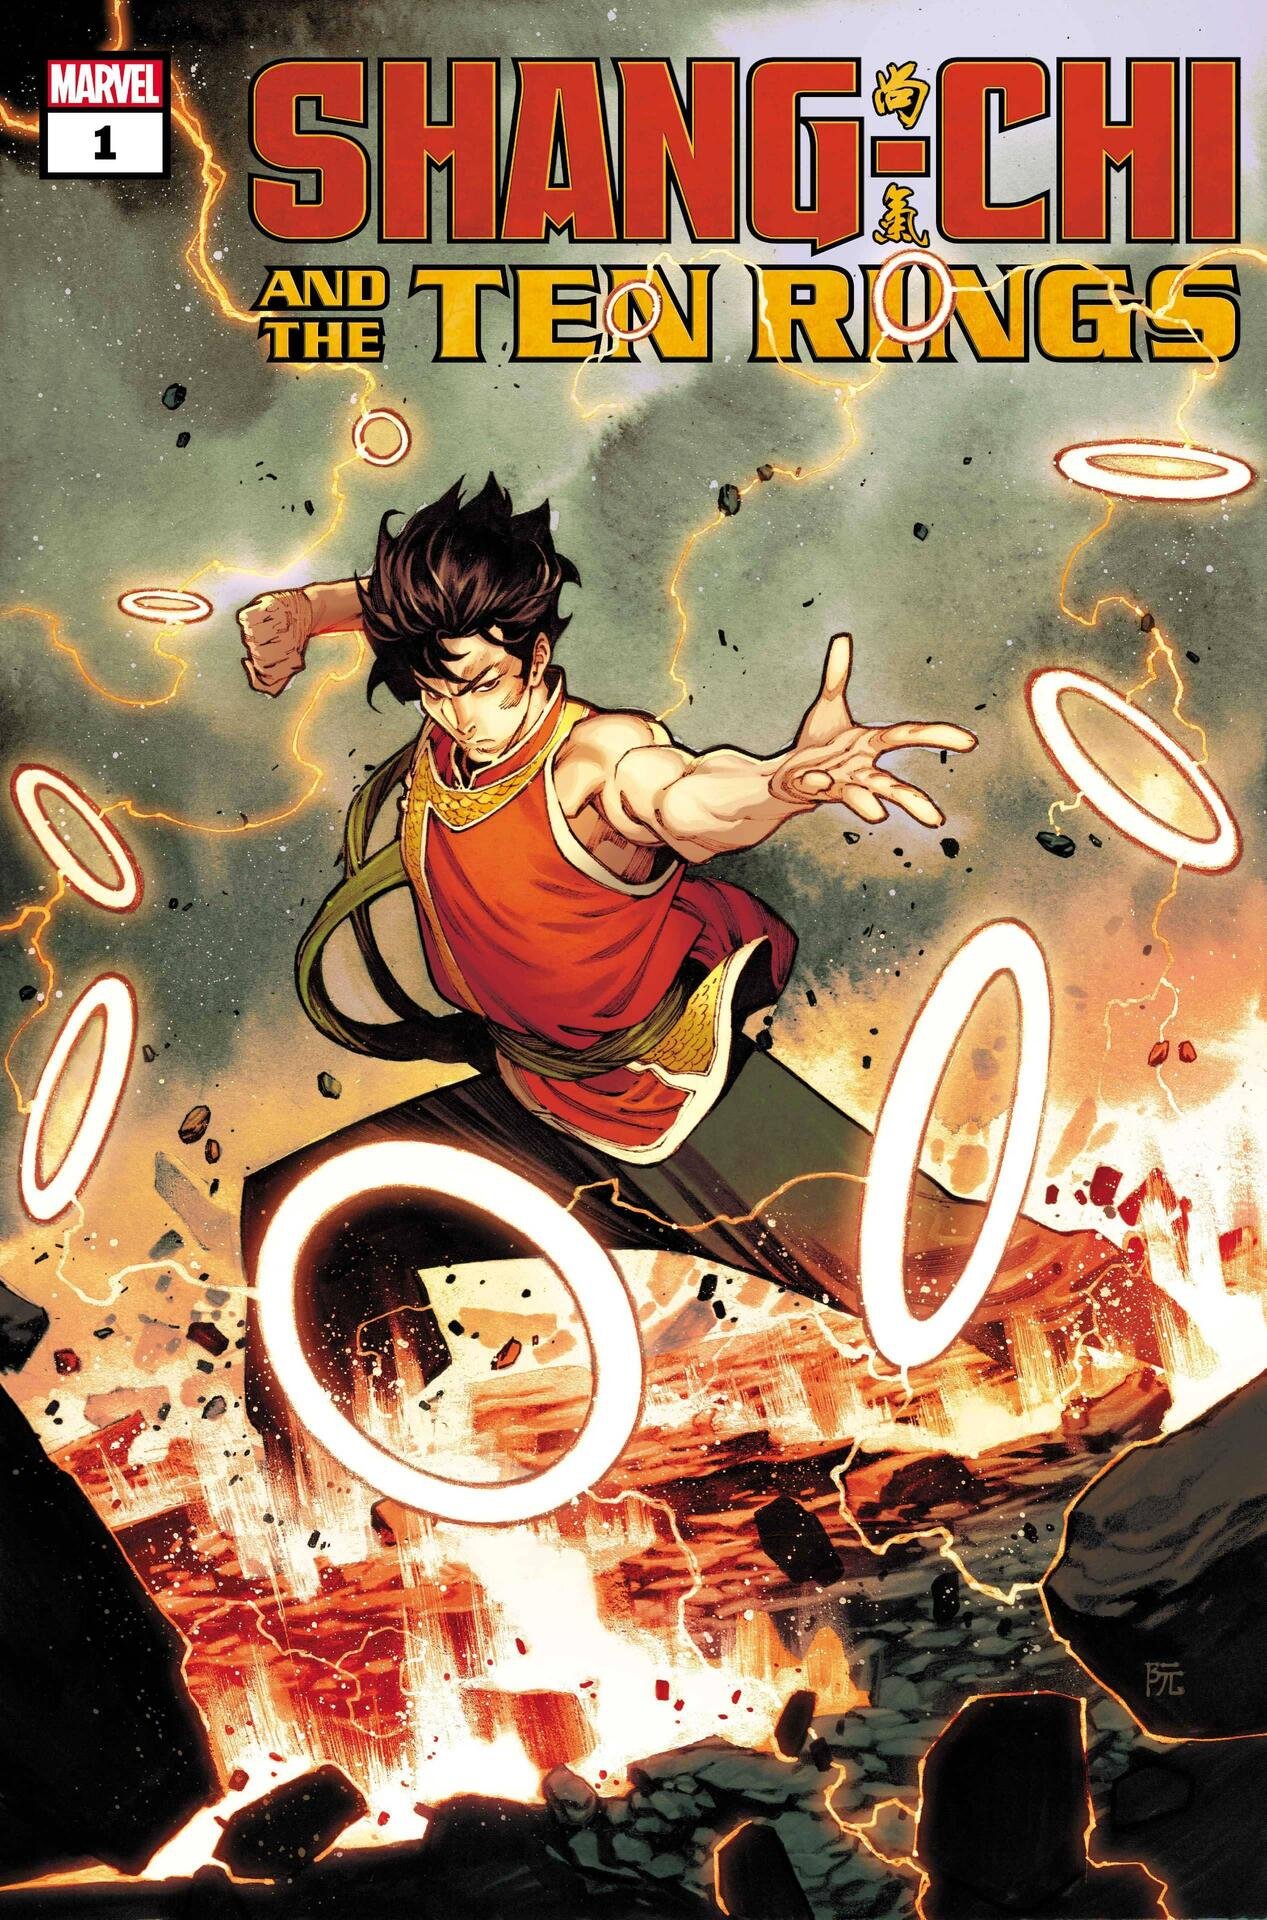 Cover di Shang-Chi and the Ten Rings 1 di Dike Ruan, la nuova serie in partenza a luglio